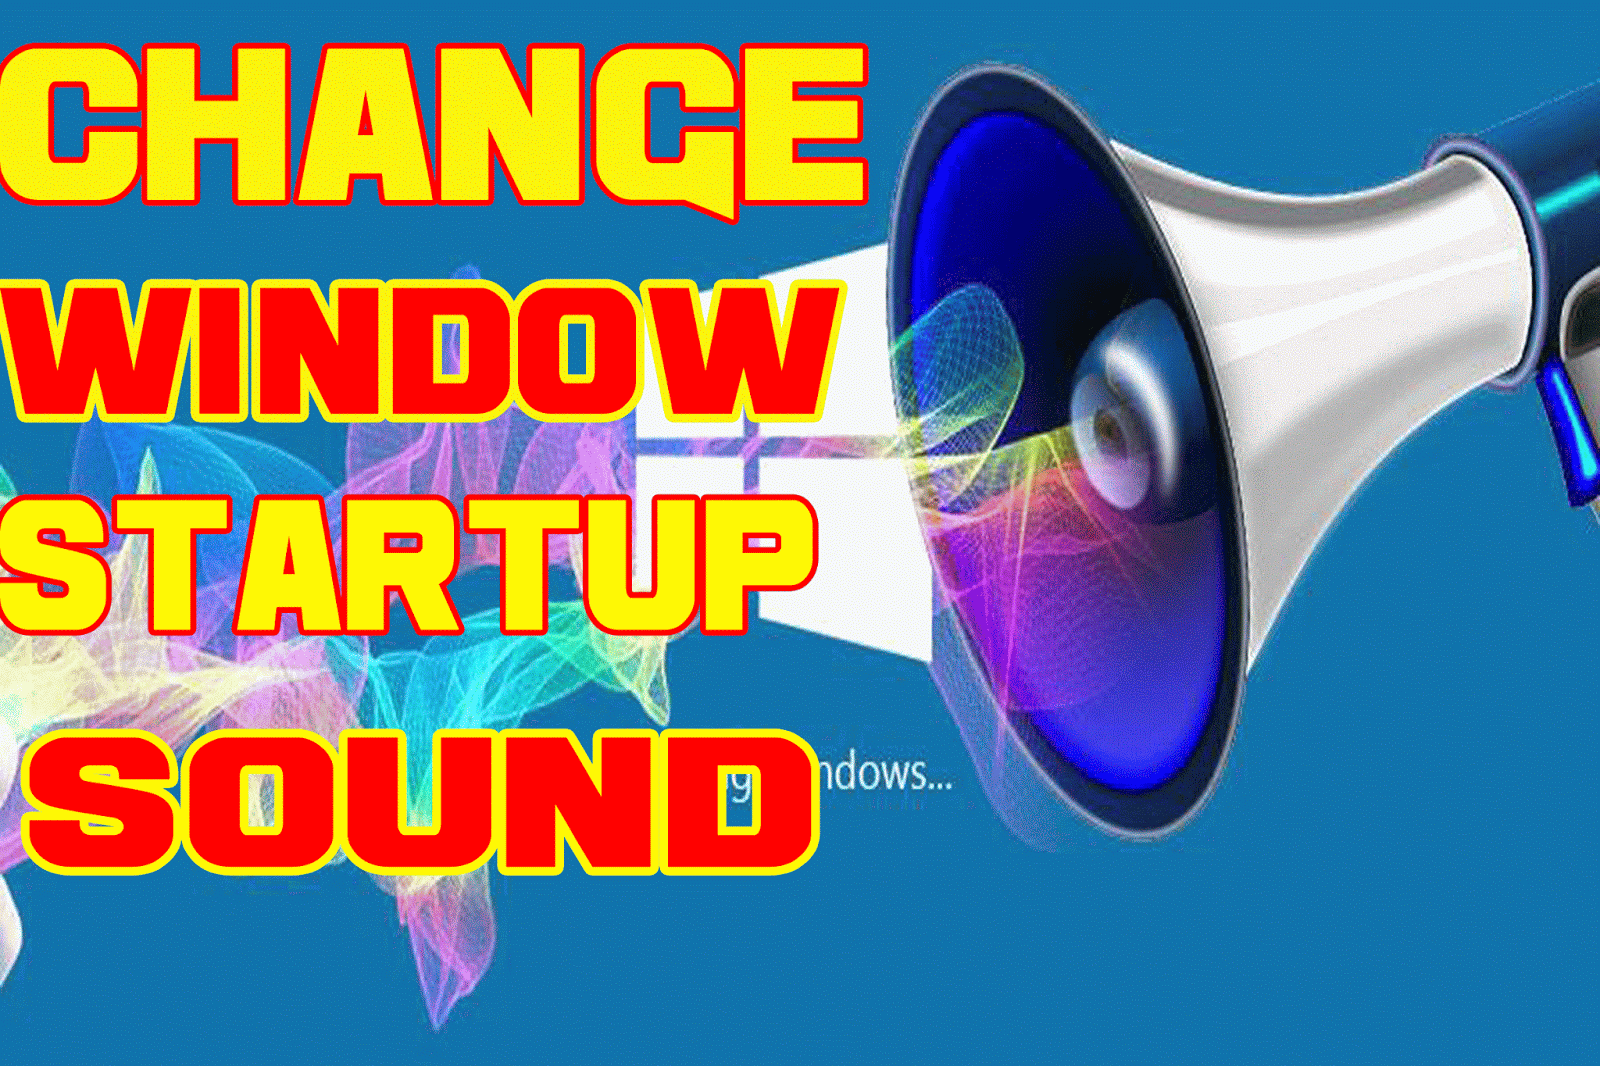 Startup sound changer